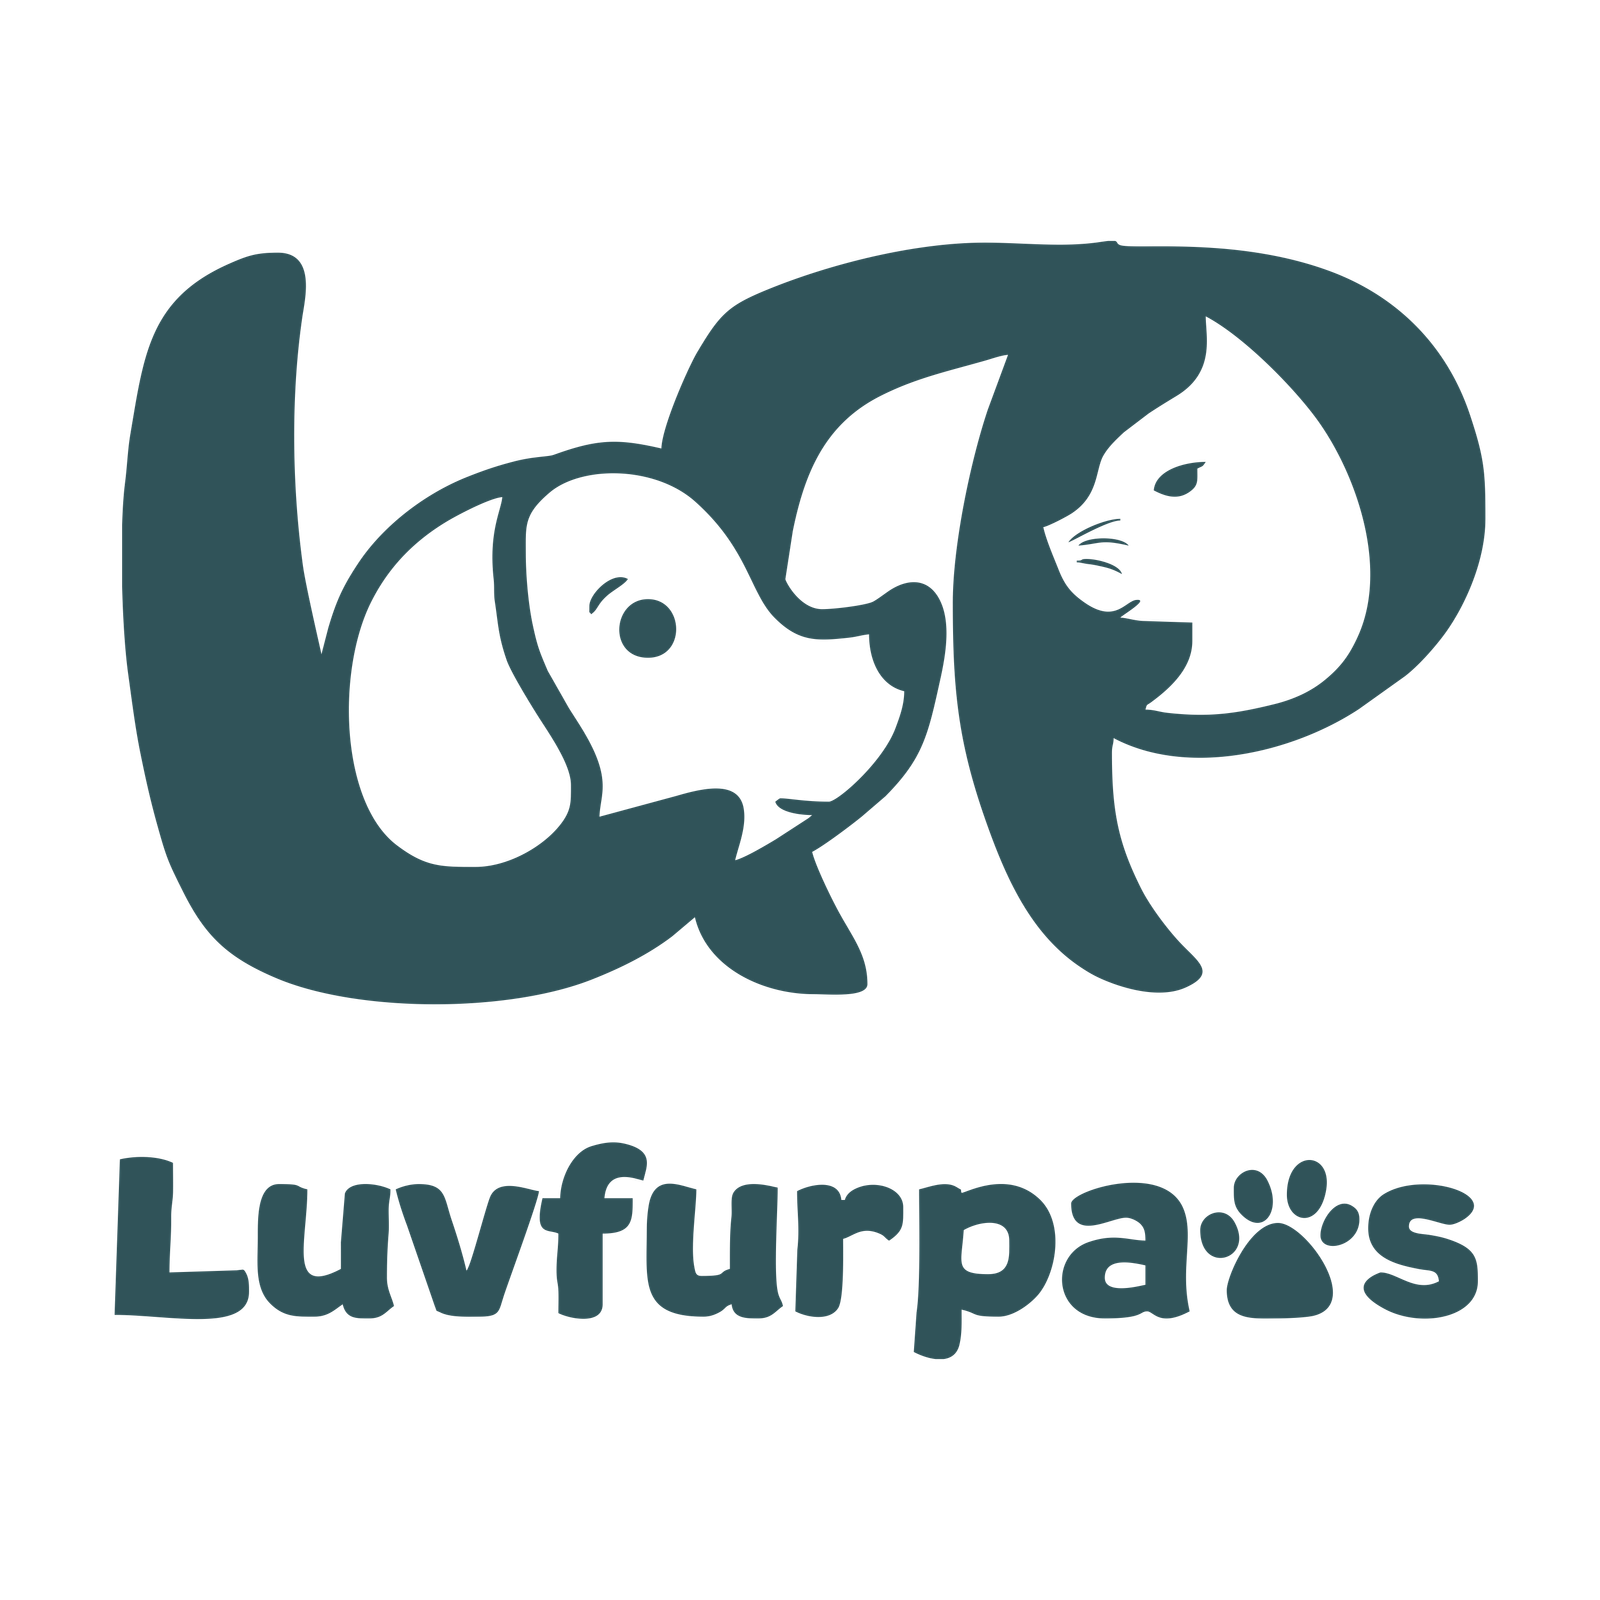 Luvfurpaws